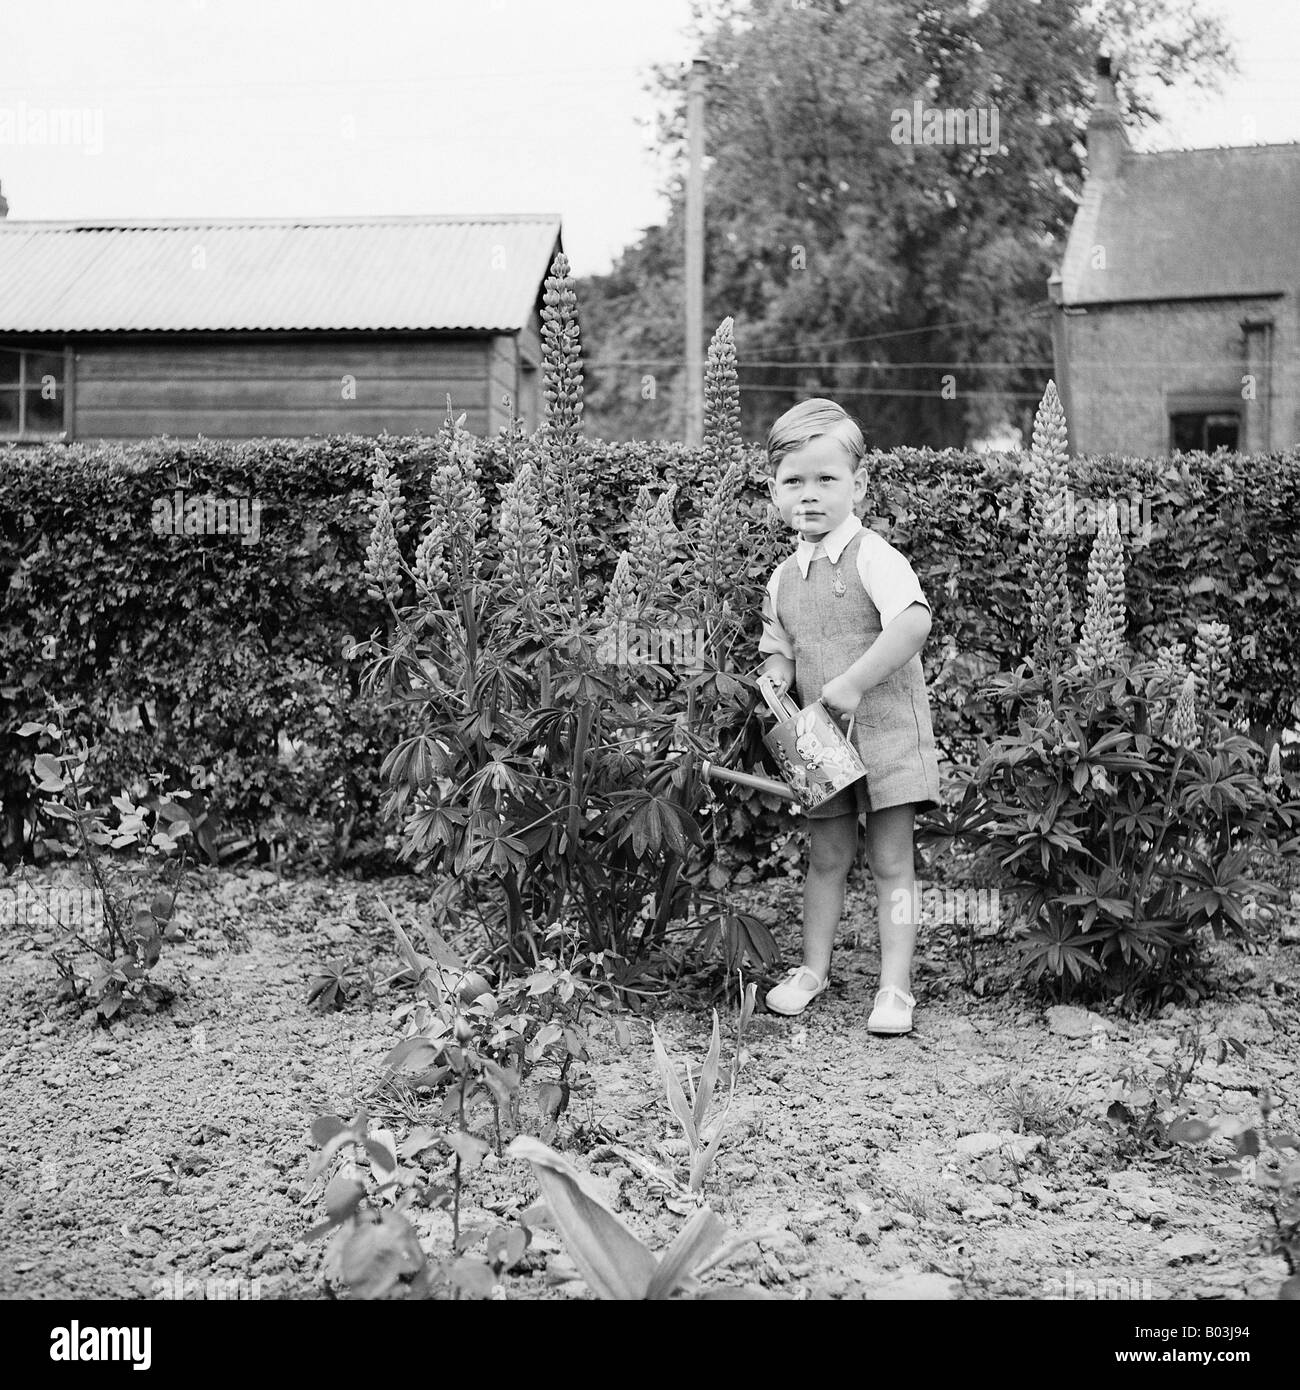 OLD VINTAGE SNAPSHOT FAMILLE PHOTOGRAPHIE DE jeune garçon dans l'arrosage des plantes de jardin à l'ARROSOIR Banque D'Images